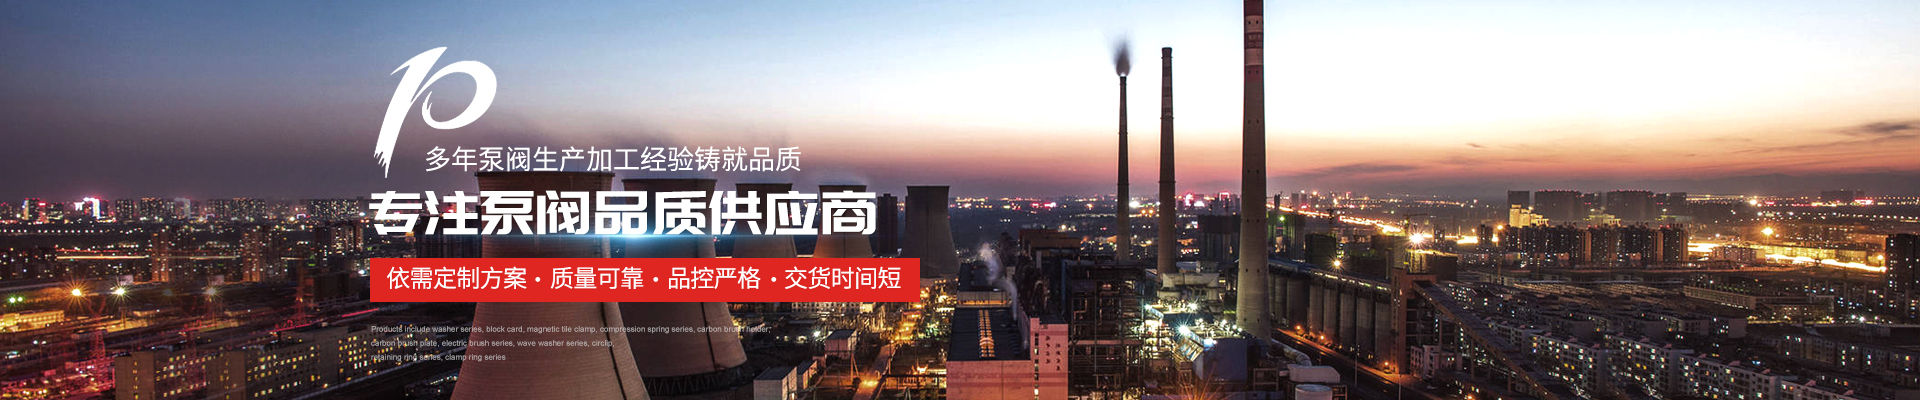 耐腐蝕泵廠家 - 上海高適泵閥有限公司